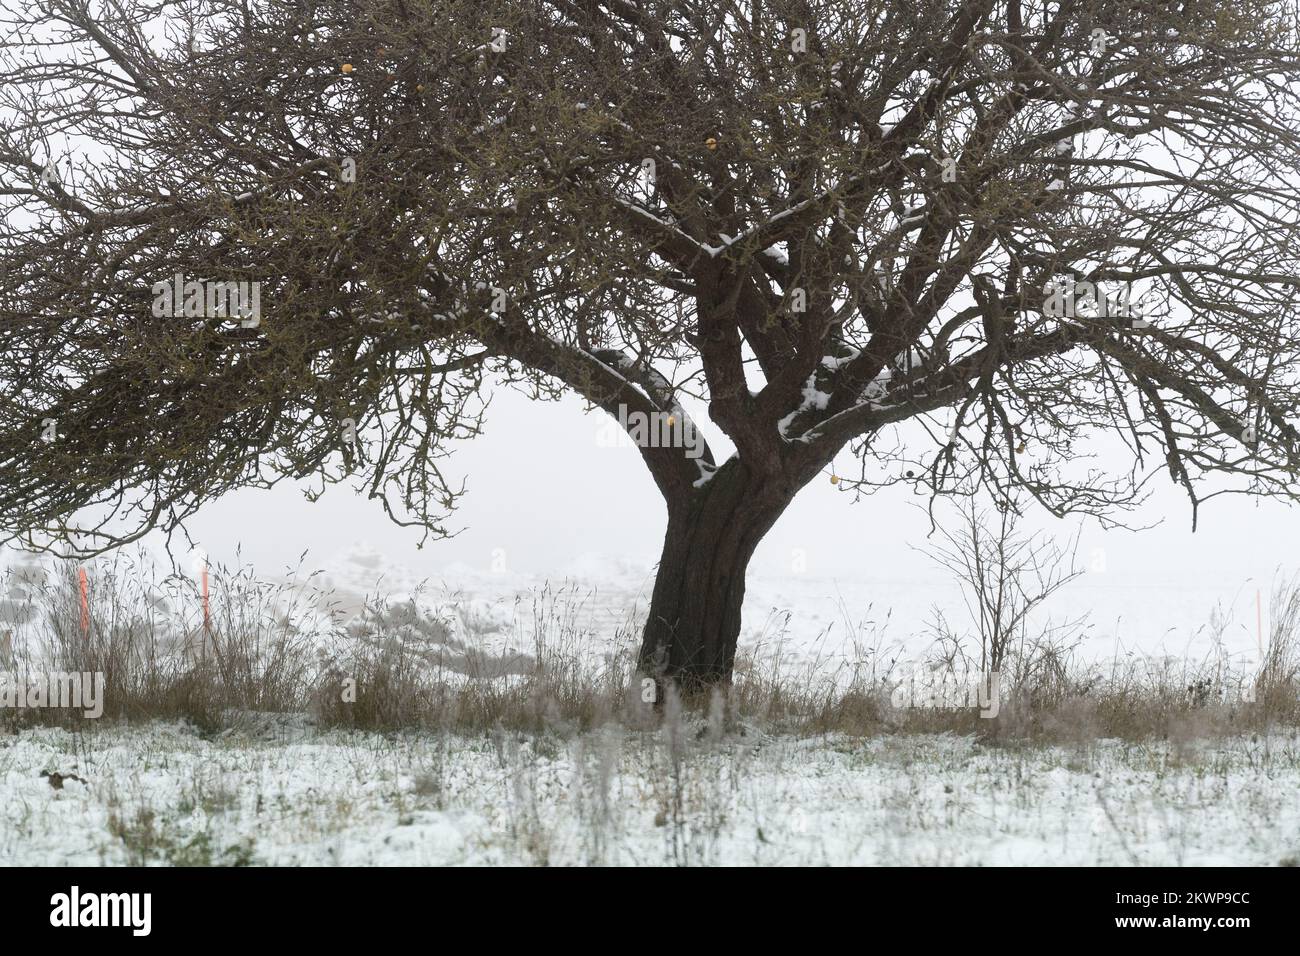 Winter in Pepowo, Poland © Wojciech Strozyk / Alamy Stock Photo Stock Photo